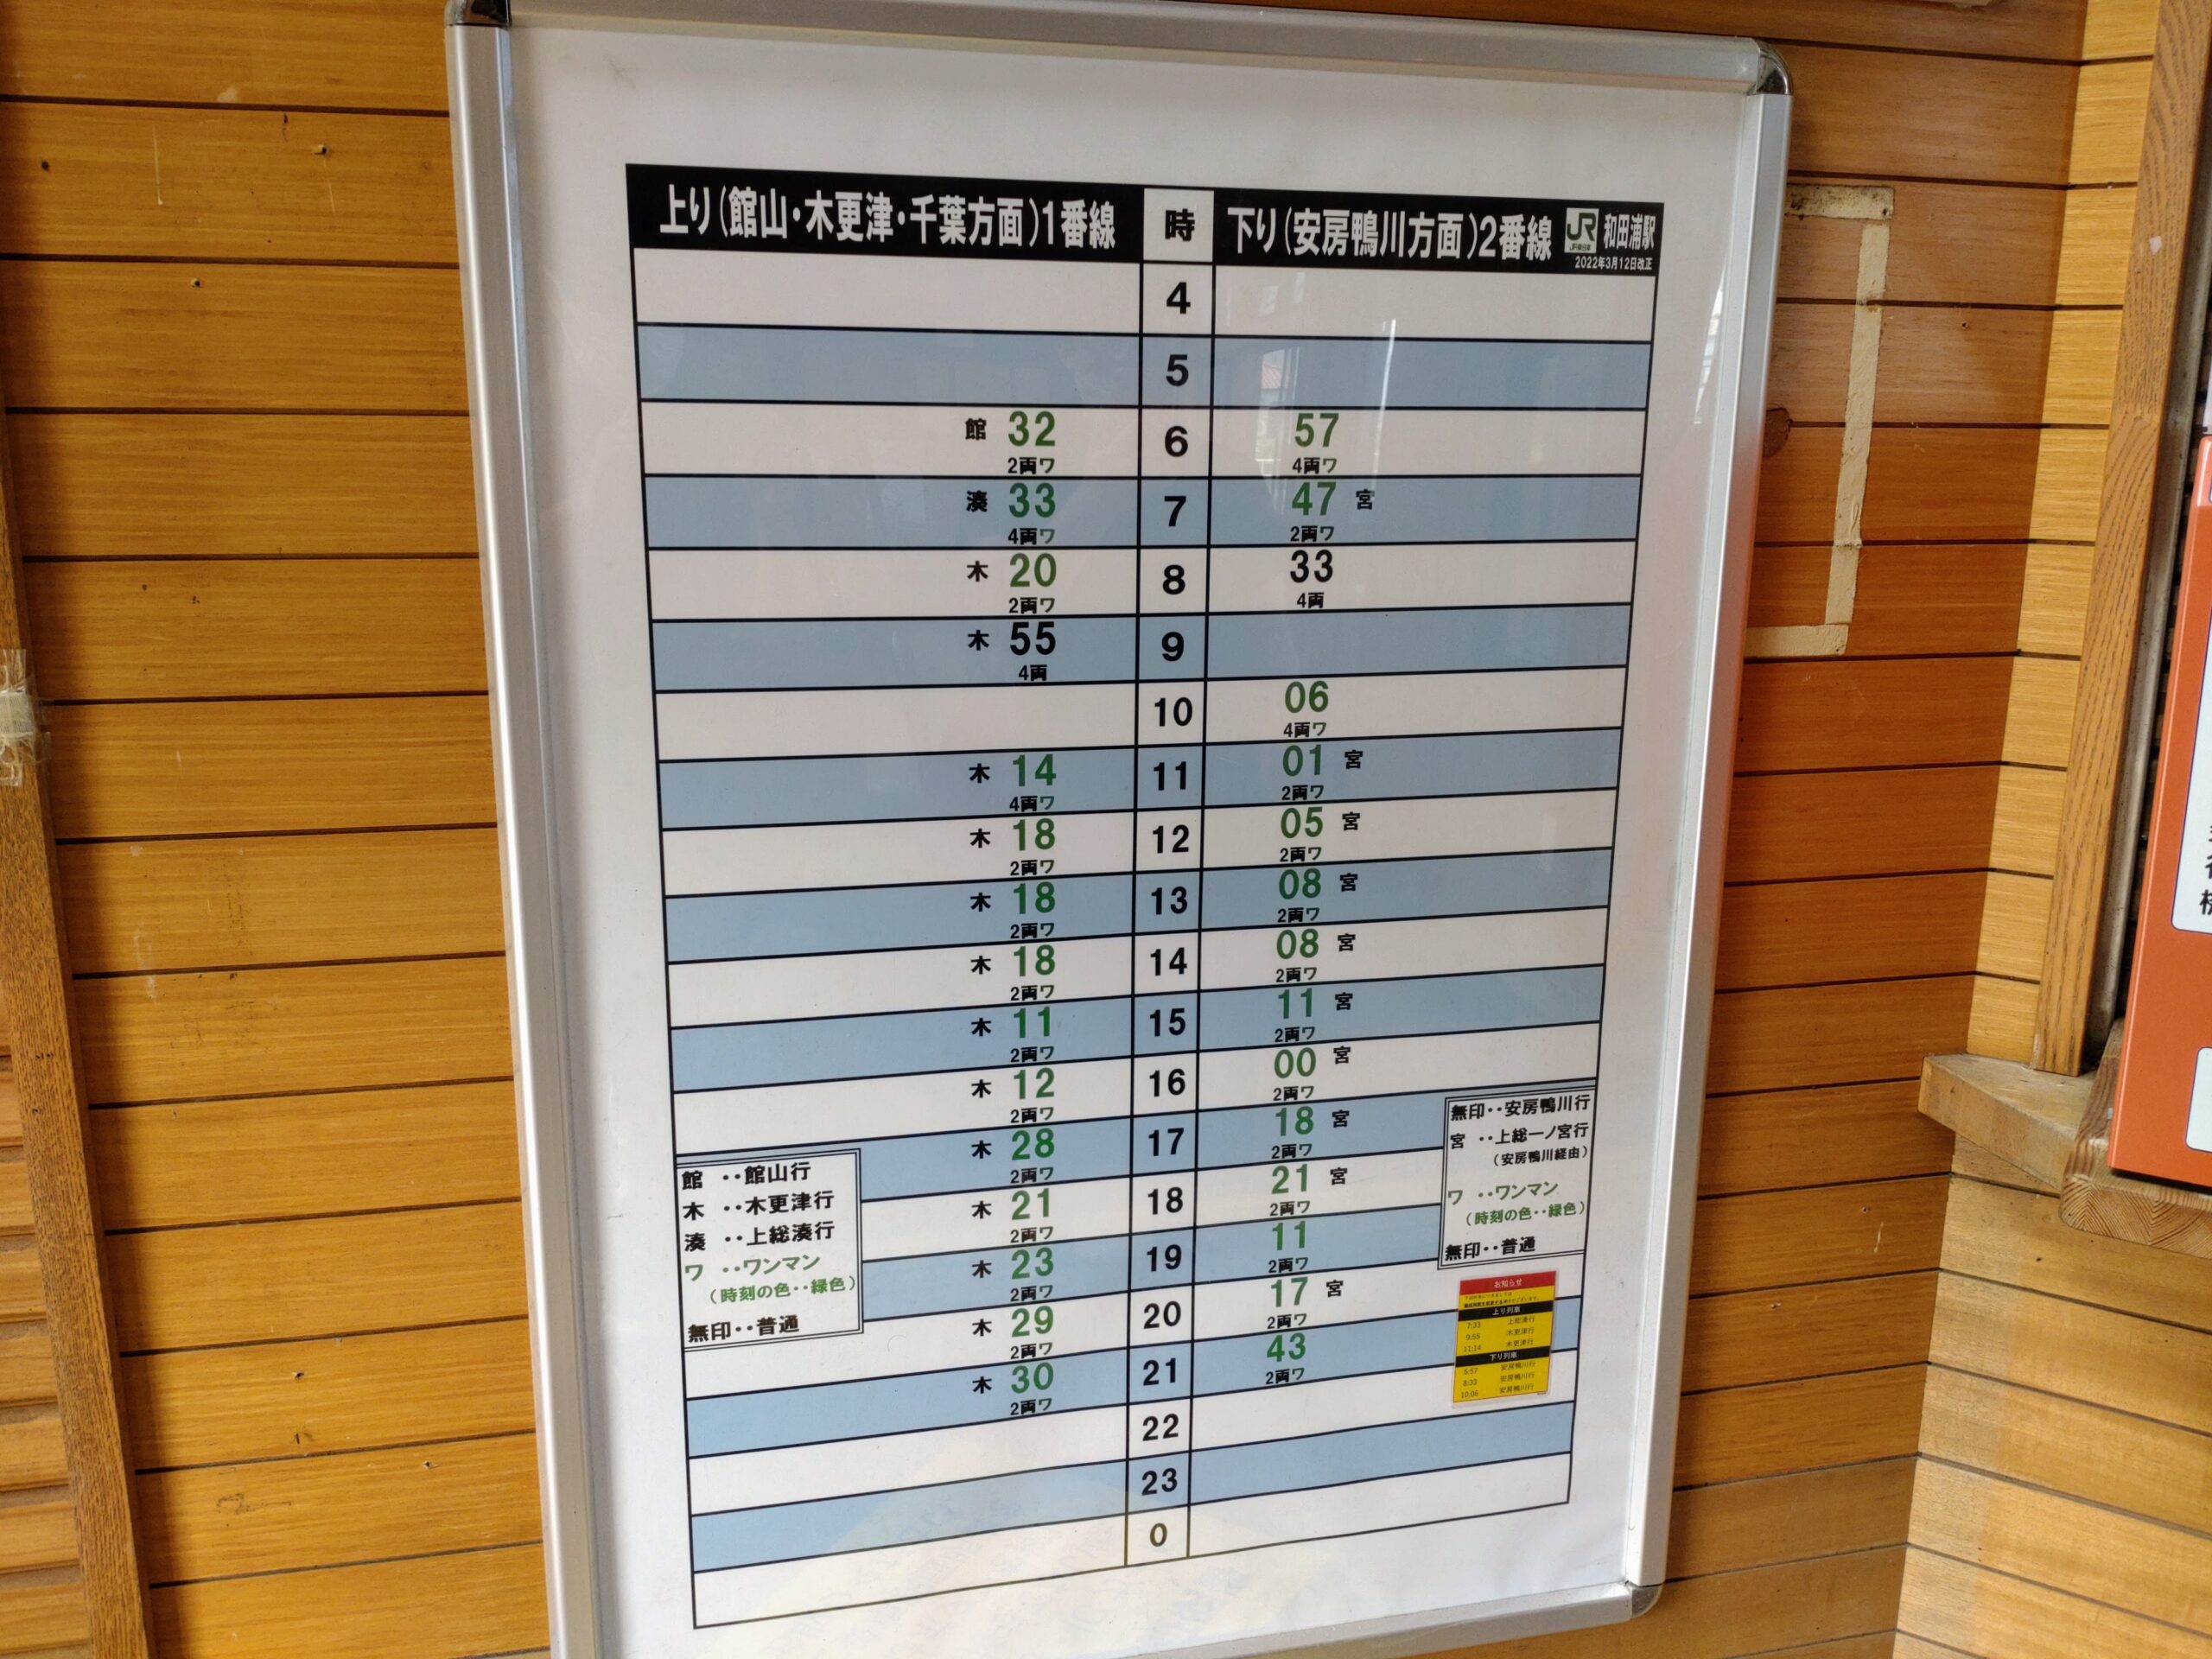 和田浦駅の時刻表